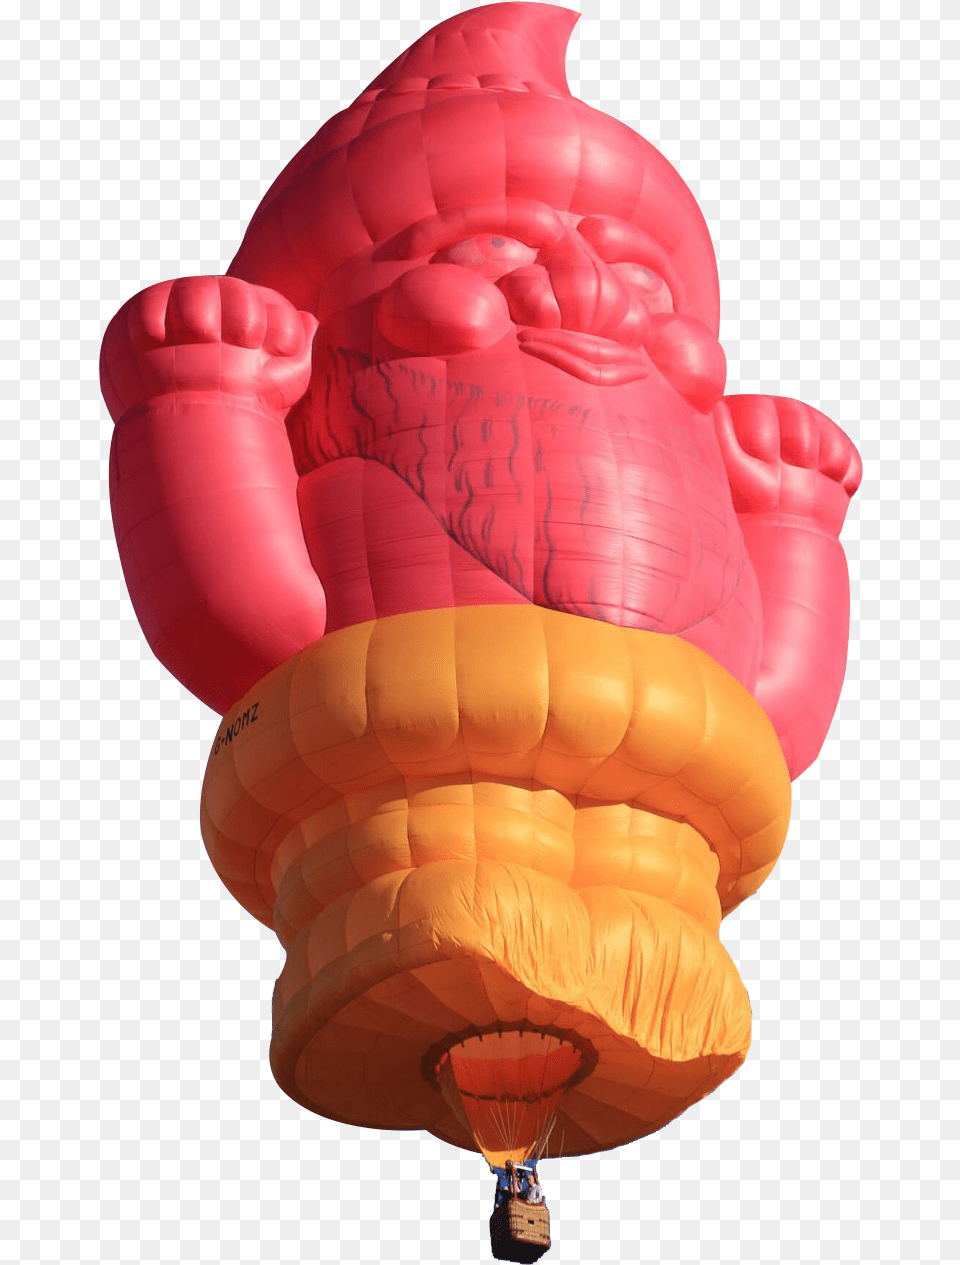 Pink Gnome Pilot Hot Air Balloon, Aircraft, Hot Air Balloon, Transportation, Vehicle Png Image